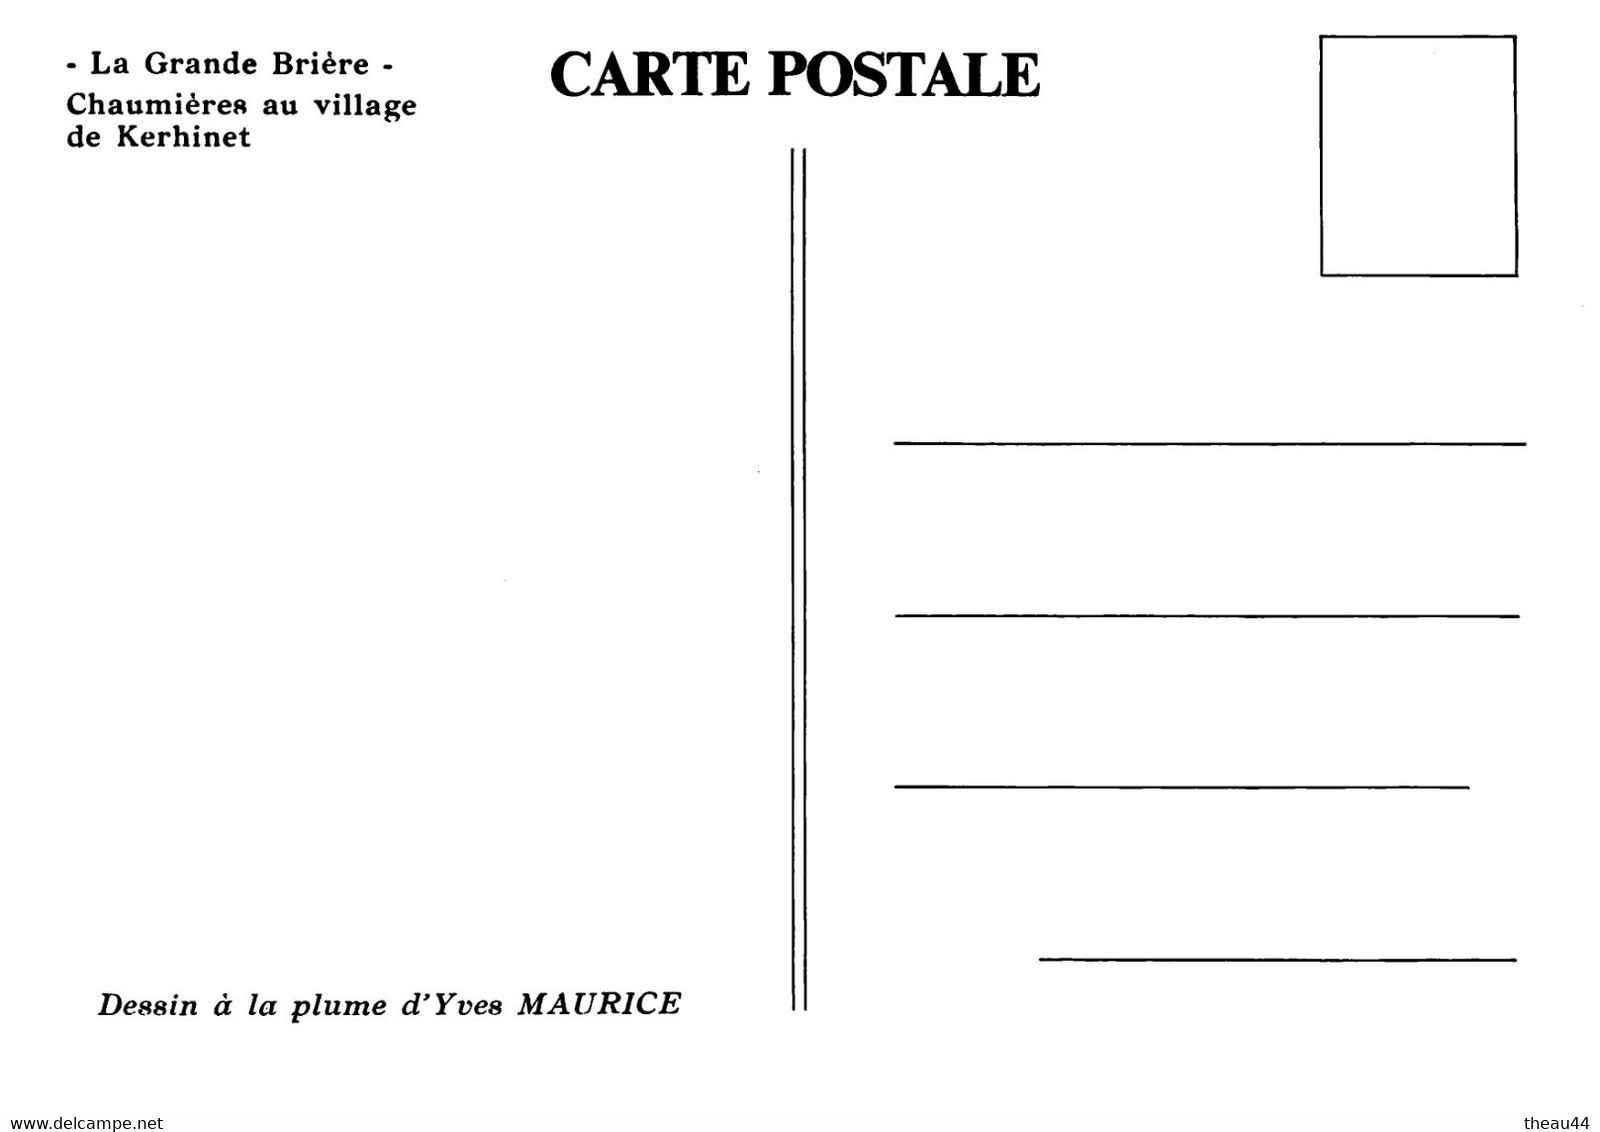 SAINT-LYPHARD  -  Lot de 8 Cartes de la Grande Brière  -  Le Village de KERHINET -  Illustrateur " Yves MAURICE "